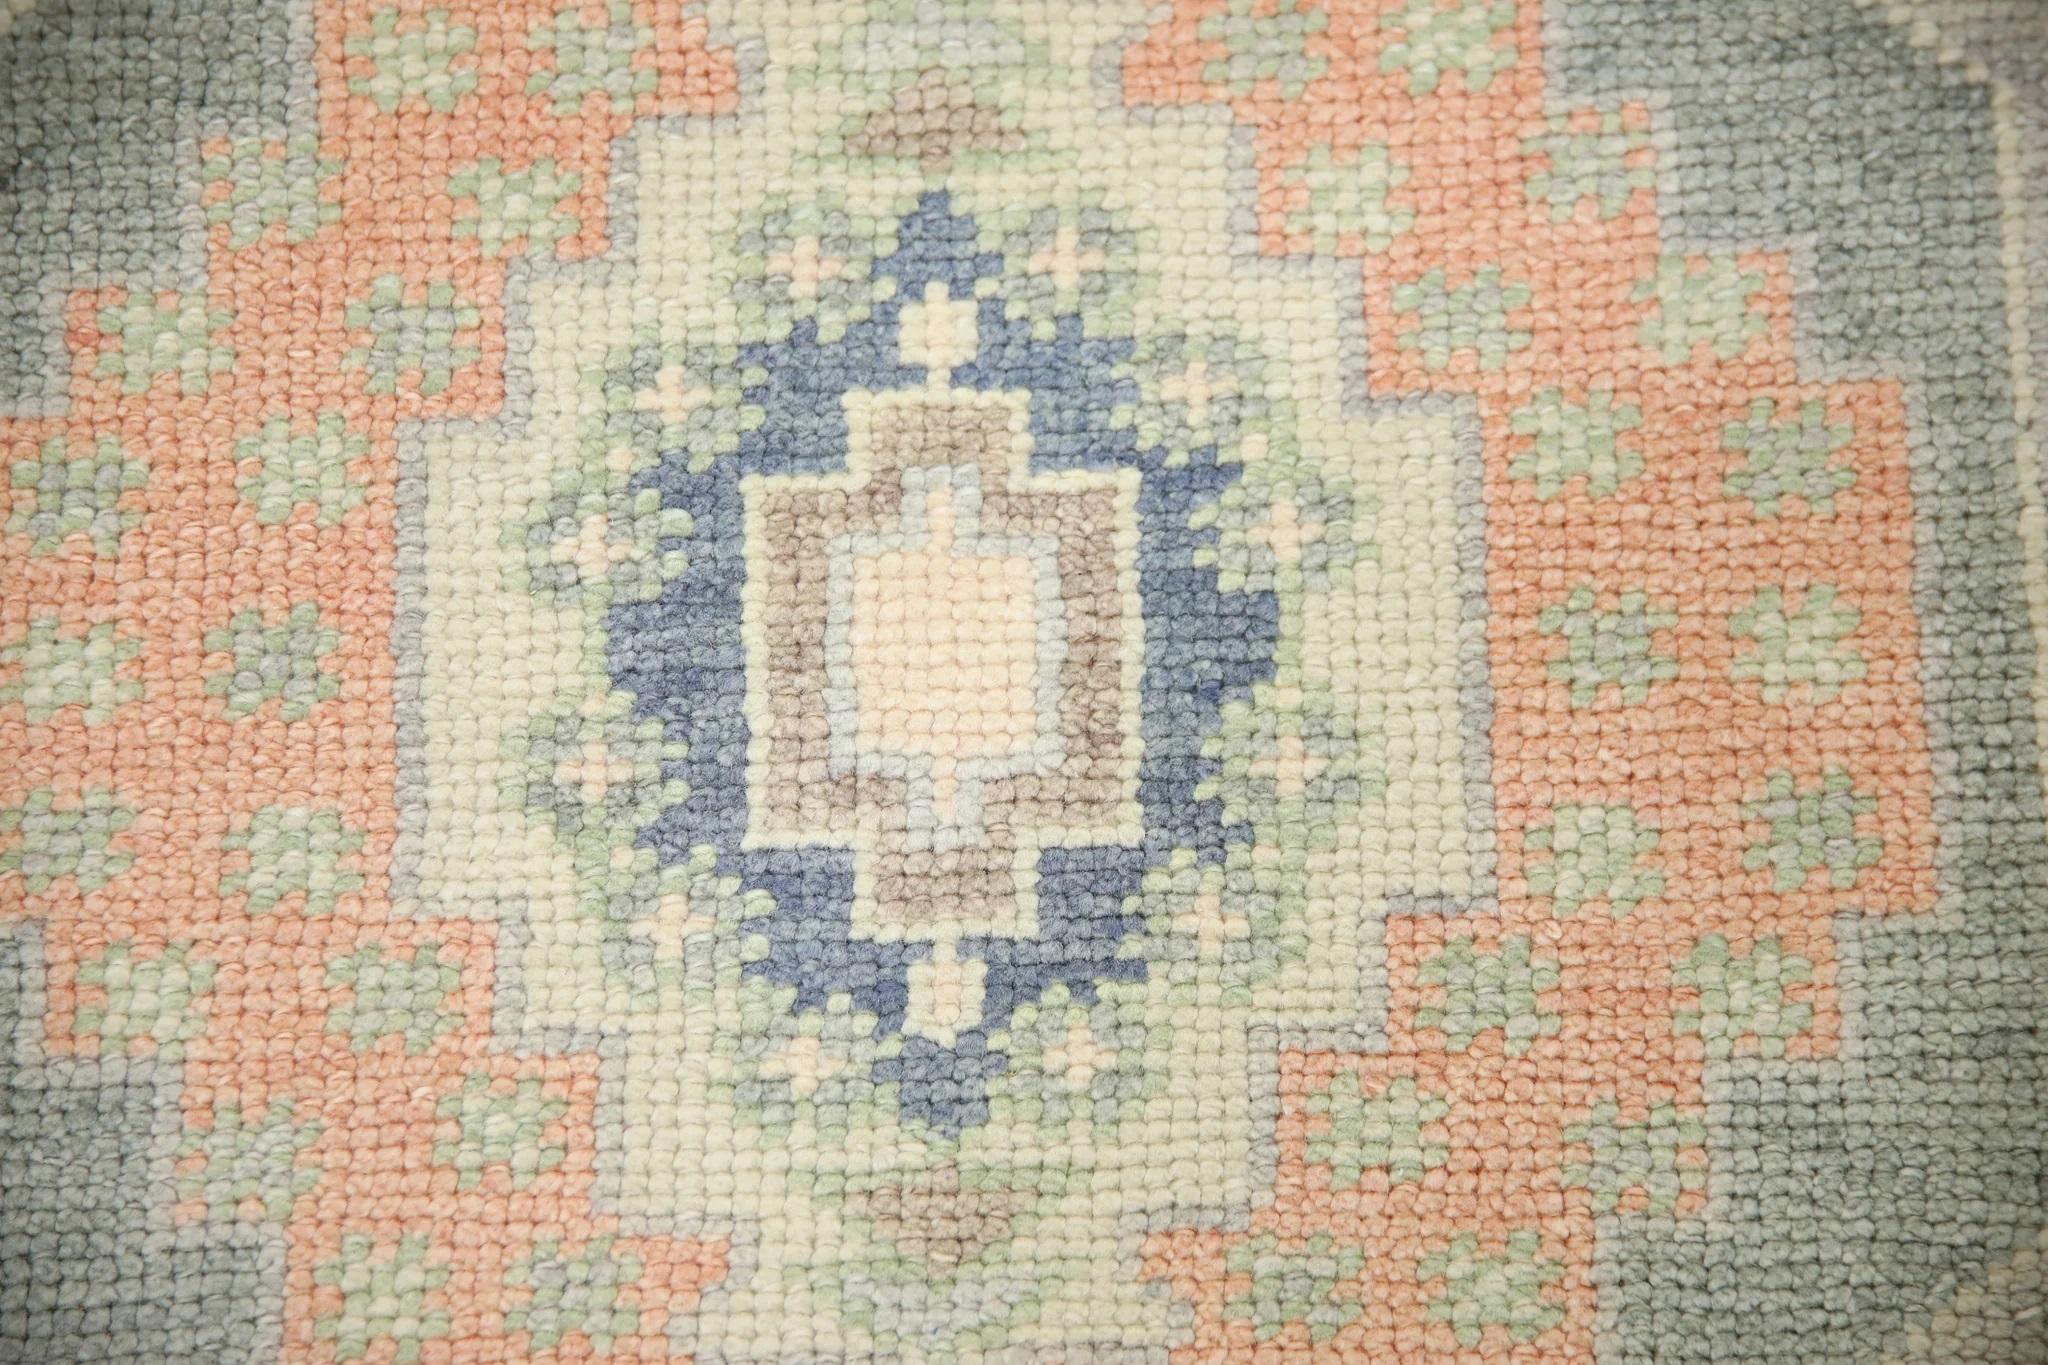 Ce tapis turc oushak est une œuvre d'art étonnante, tissée à la main selon des techniques traditionnelles par des artisans qualifiés. Le tapis présente des motifs complexes et une palette de couleurs douces obtenue grâce à l'utilisation de teintures